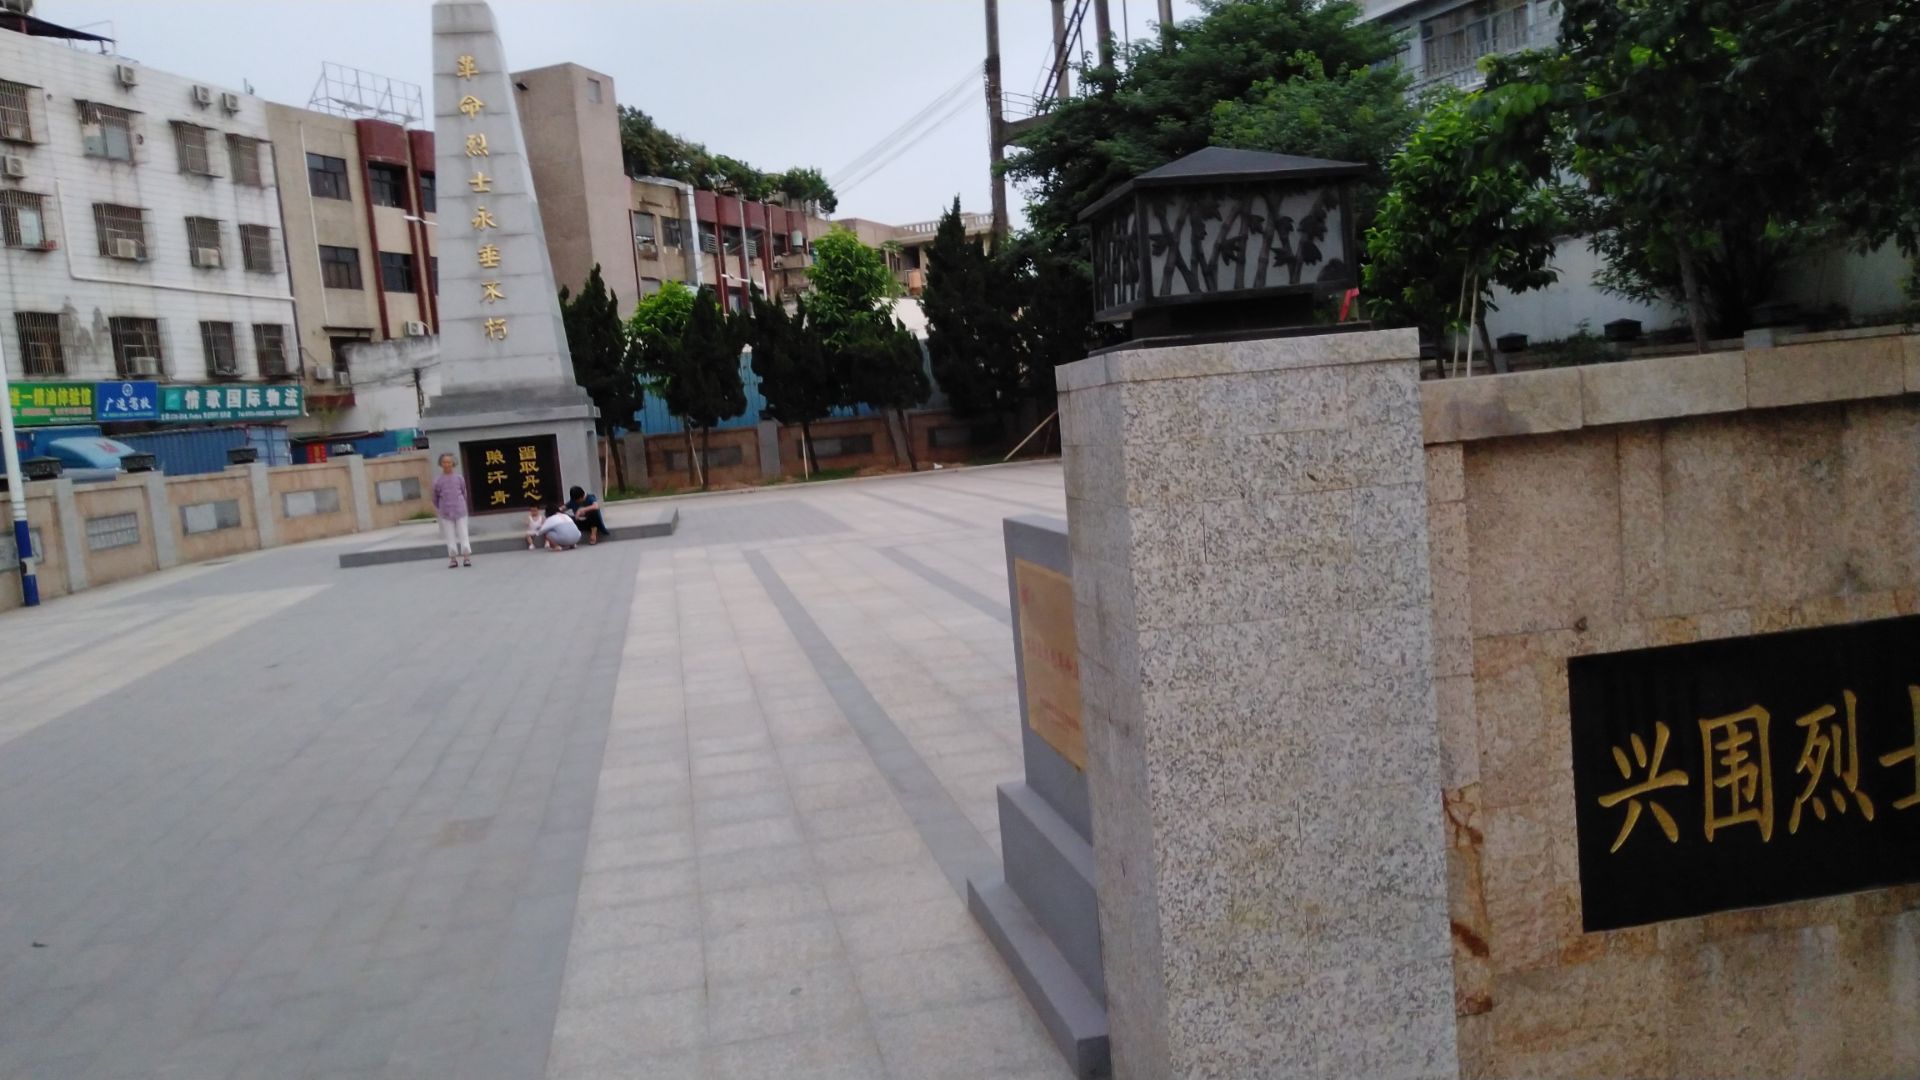 兴围烈士纪念碑图片